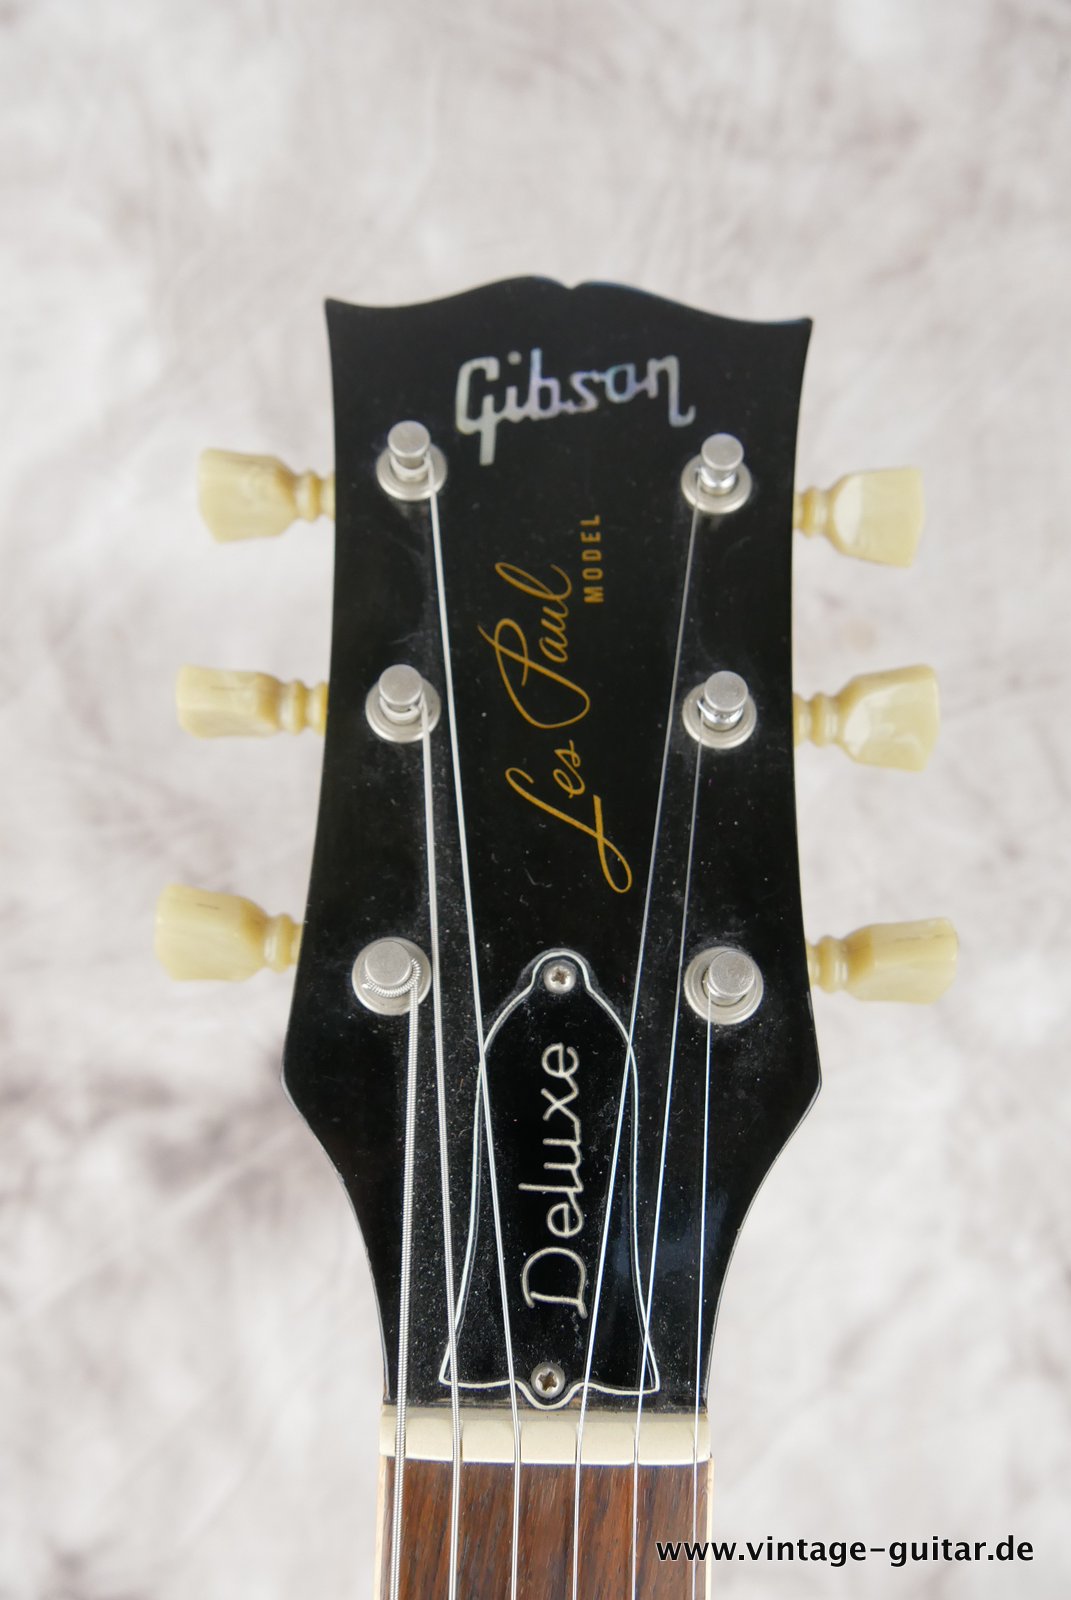 Gibson-Les-Paul Deluxe-1973-cherry-sunburst-009.JPG